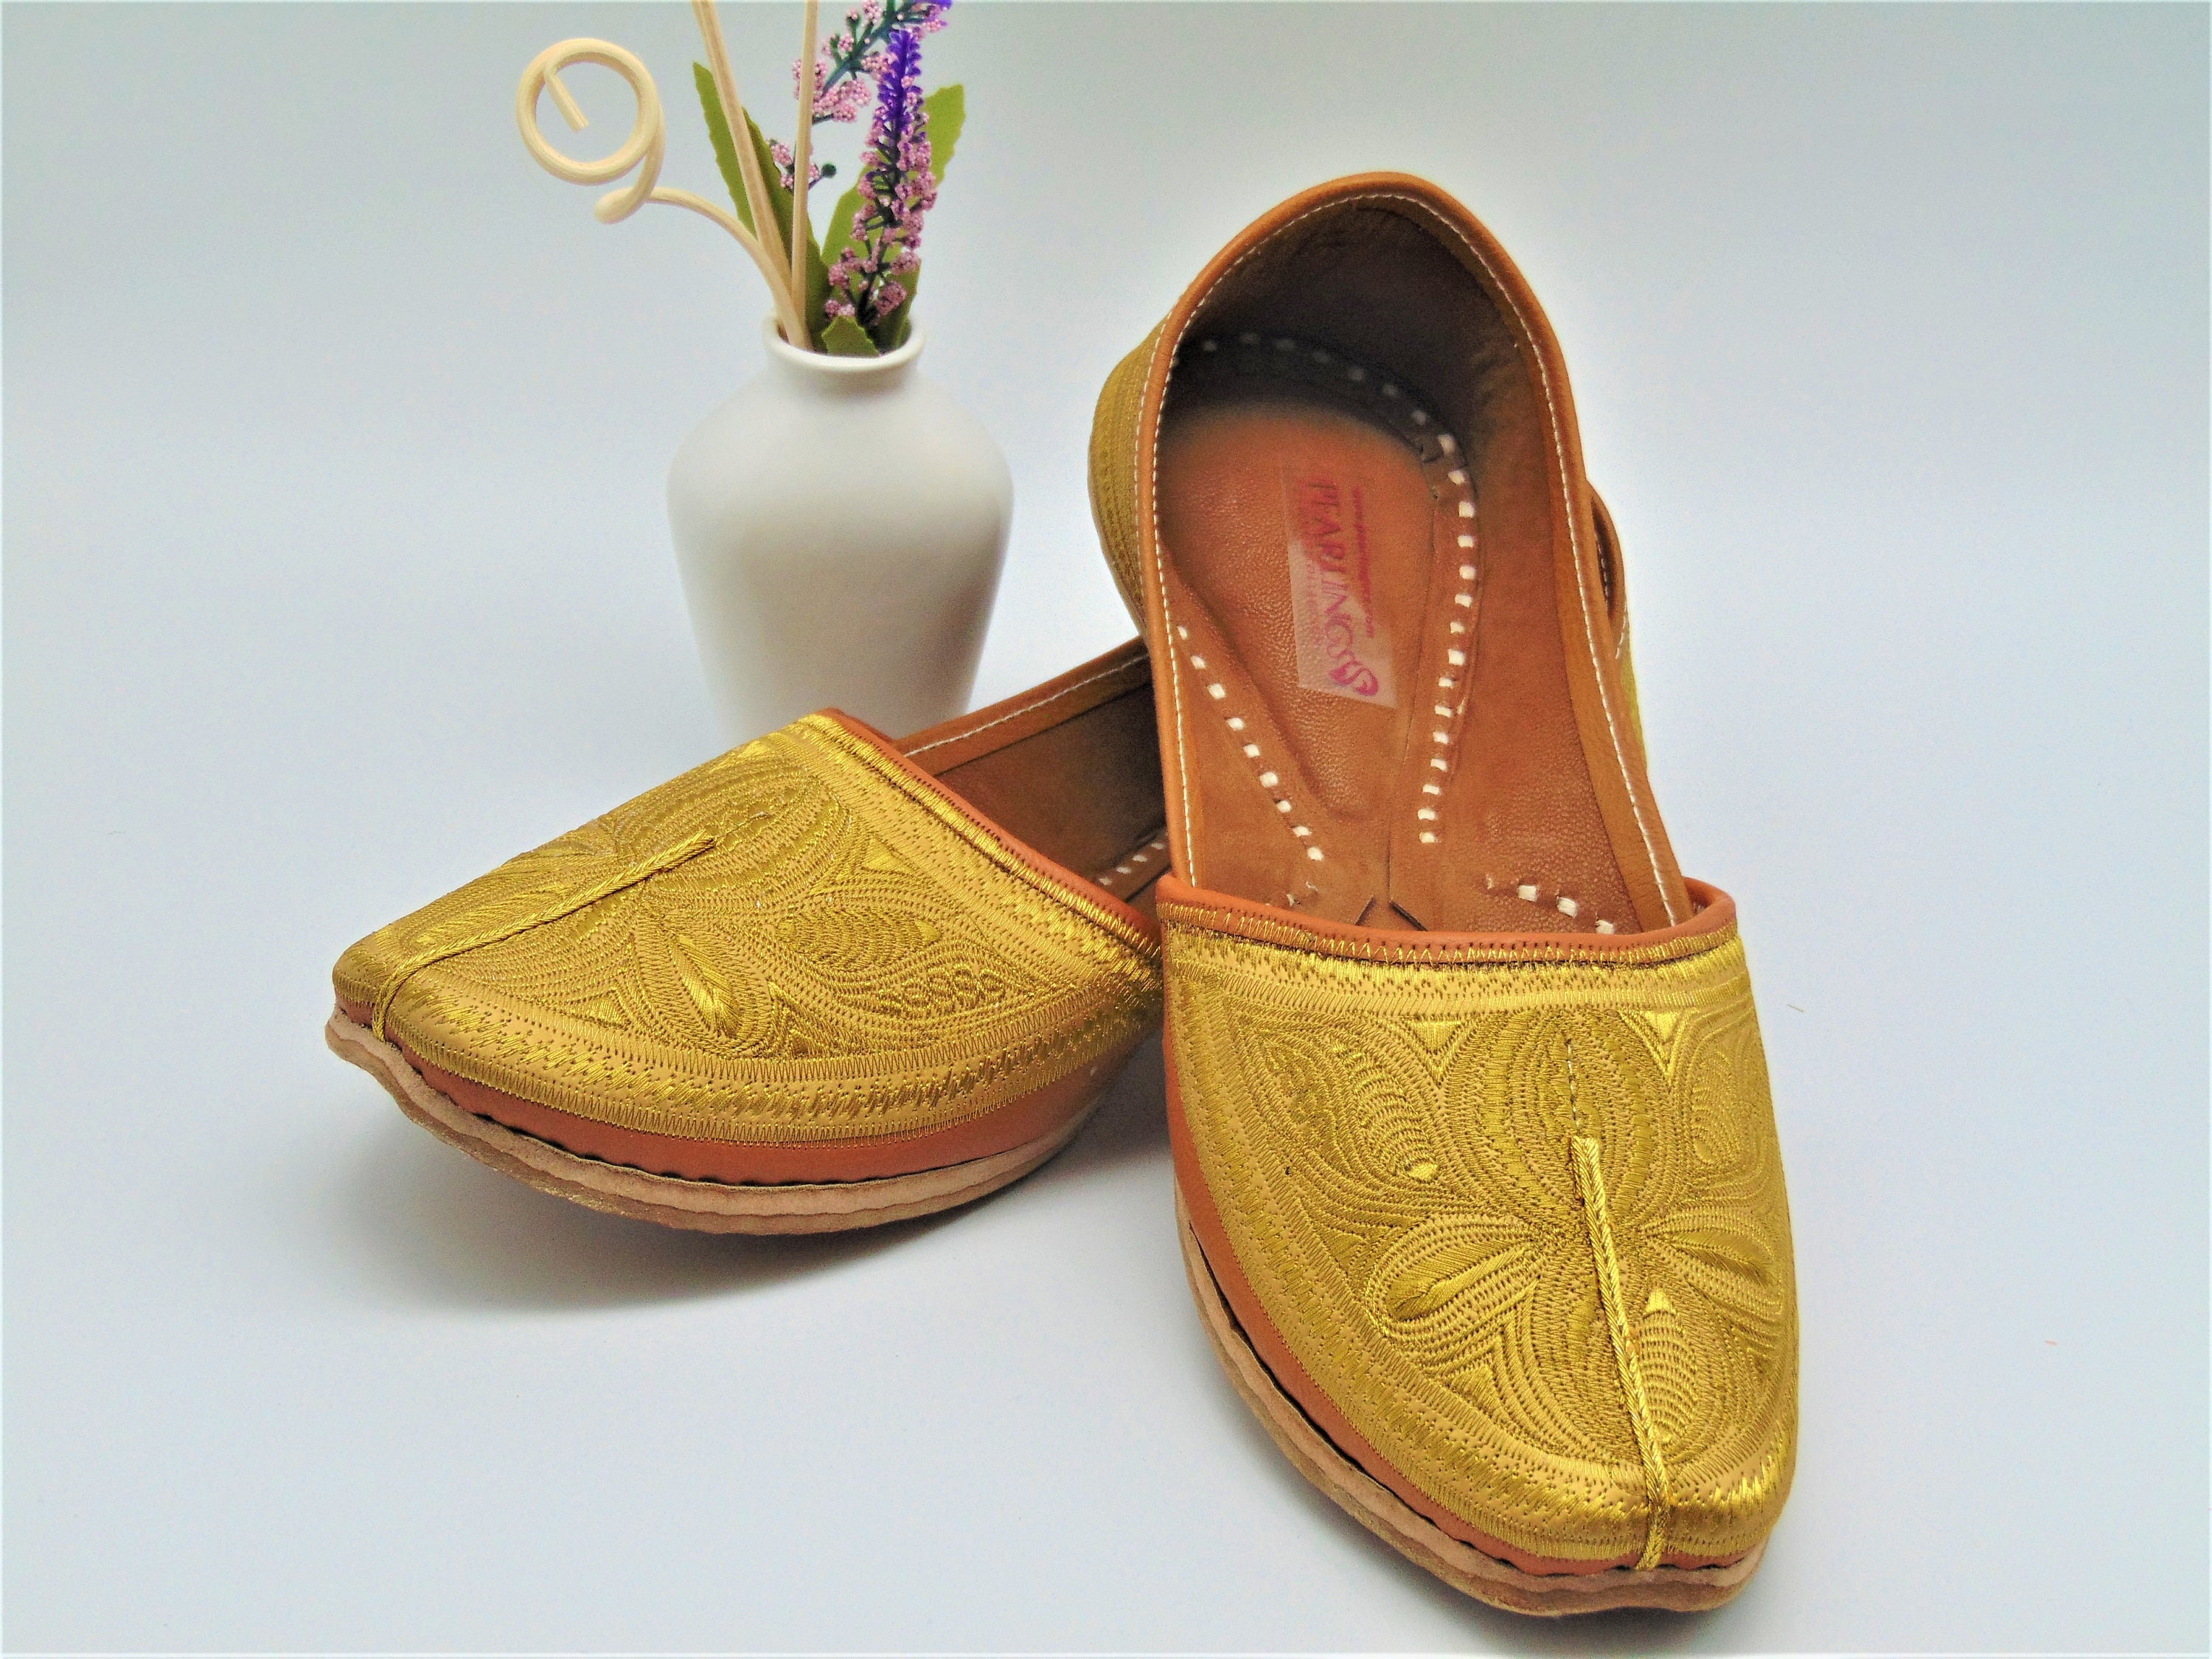 Schoenen Herenschoenen Loafers & Instappers Heren schoenen traditionele bruin met gouden schoenen Indiase Mojari Loafers Flat Khussa Jutties 